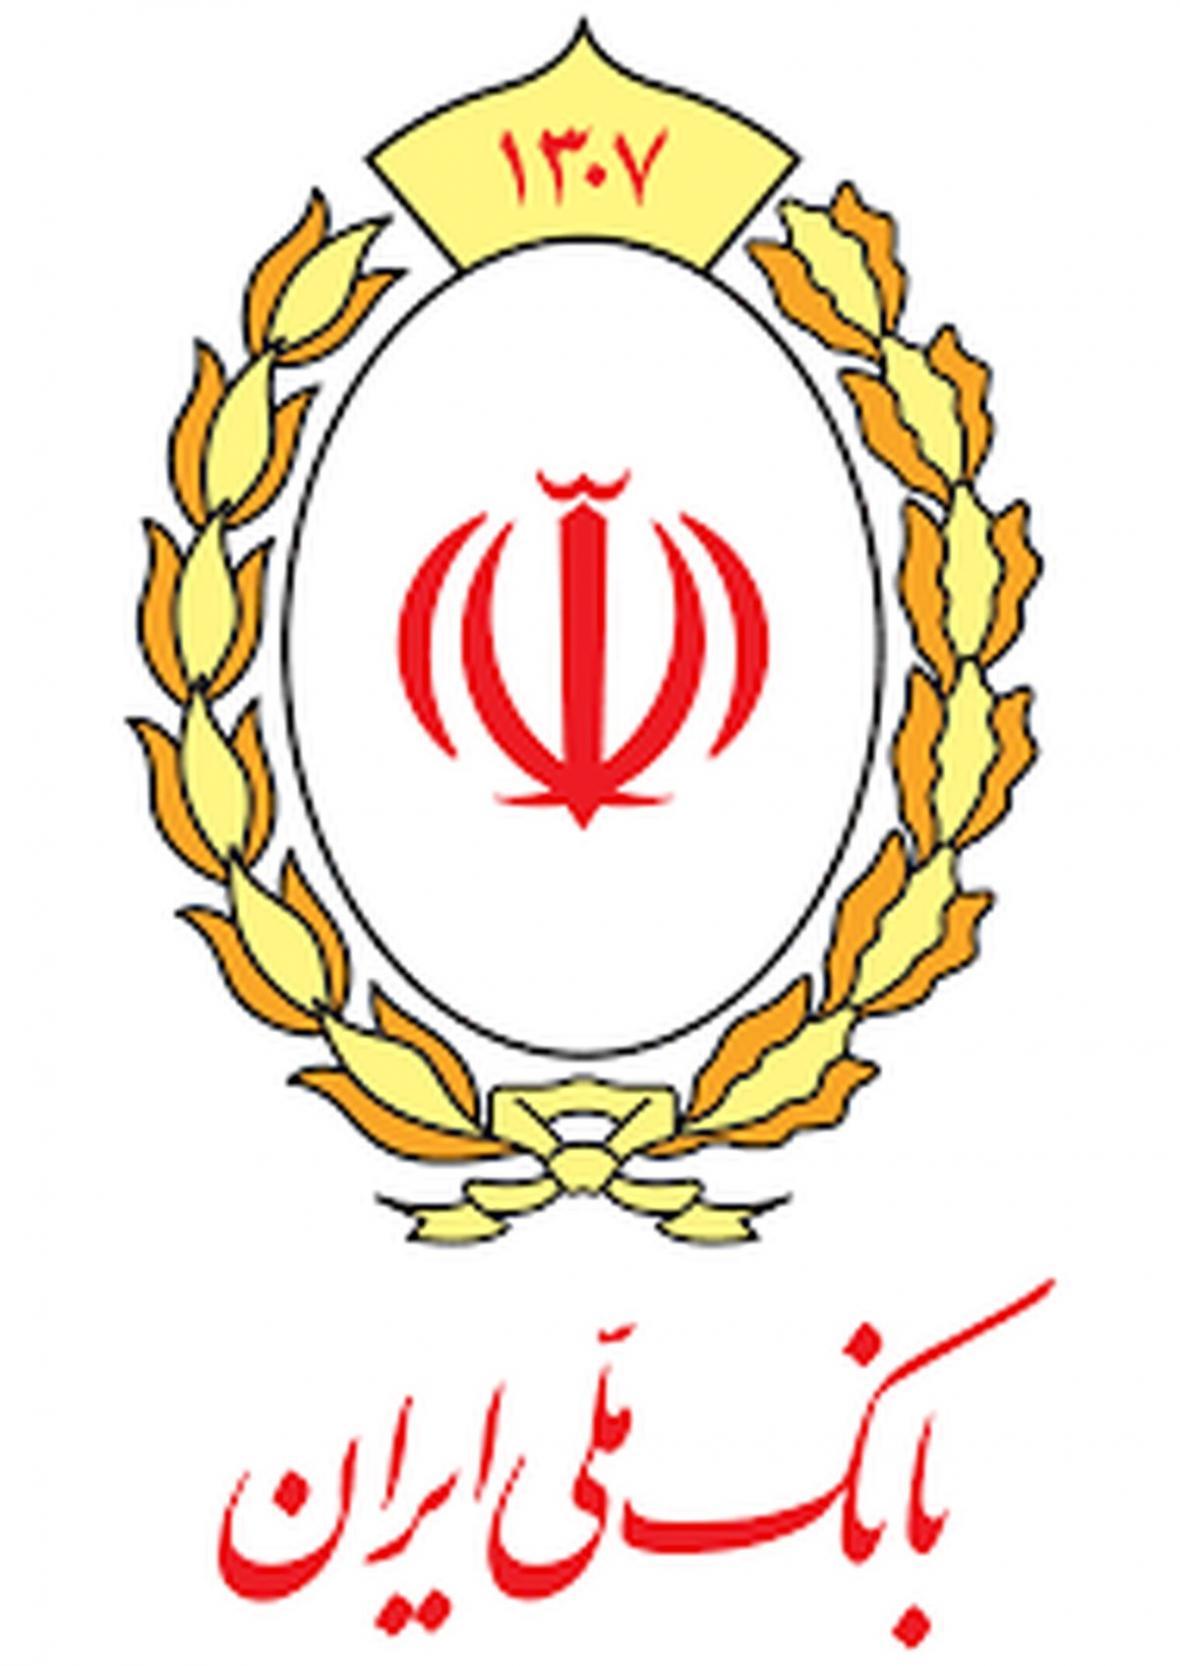 اعلام شیفت های کاری شعب فعال بانک ملی ایران در مناطق قرمز